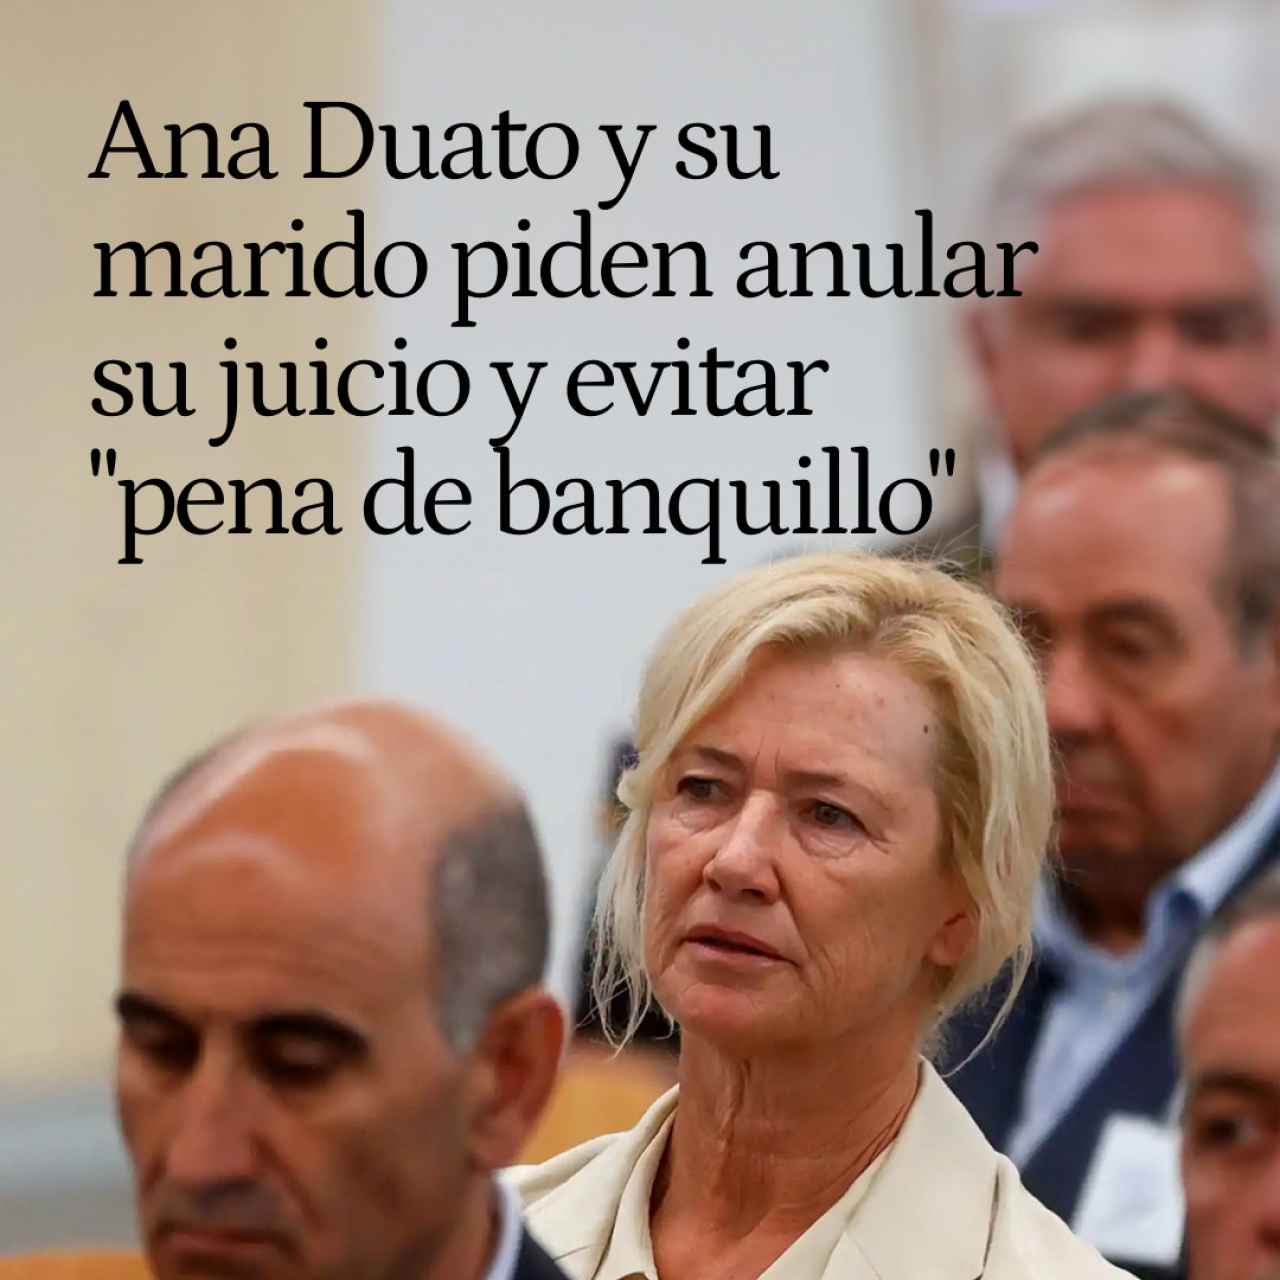 Ana Duato y su marido, Miguel Ángel Bernardeau, piden anular su juicio y evitar "pena de banquillo"